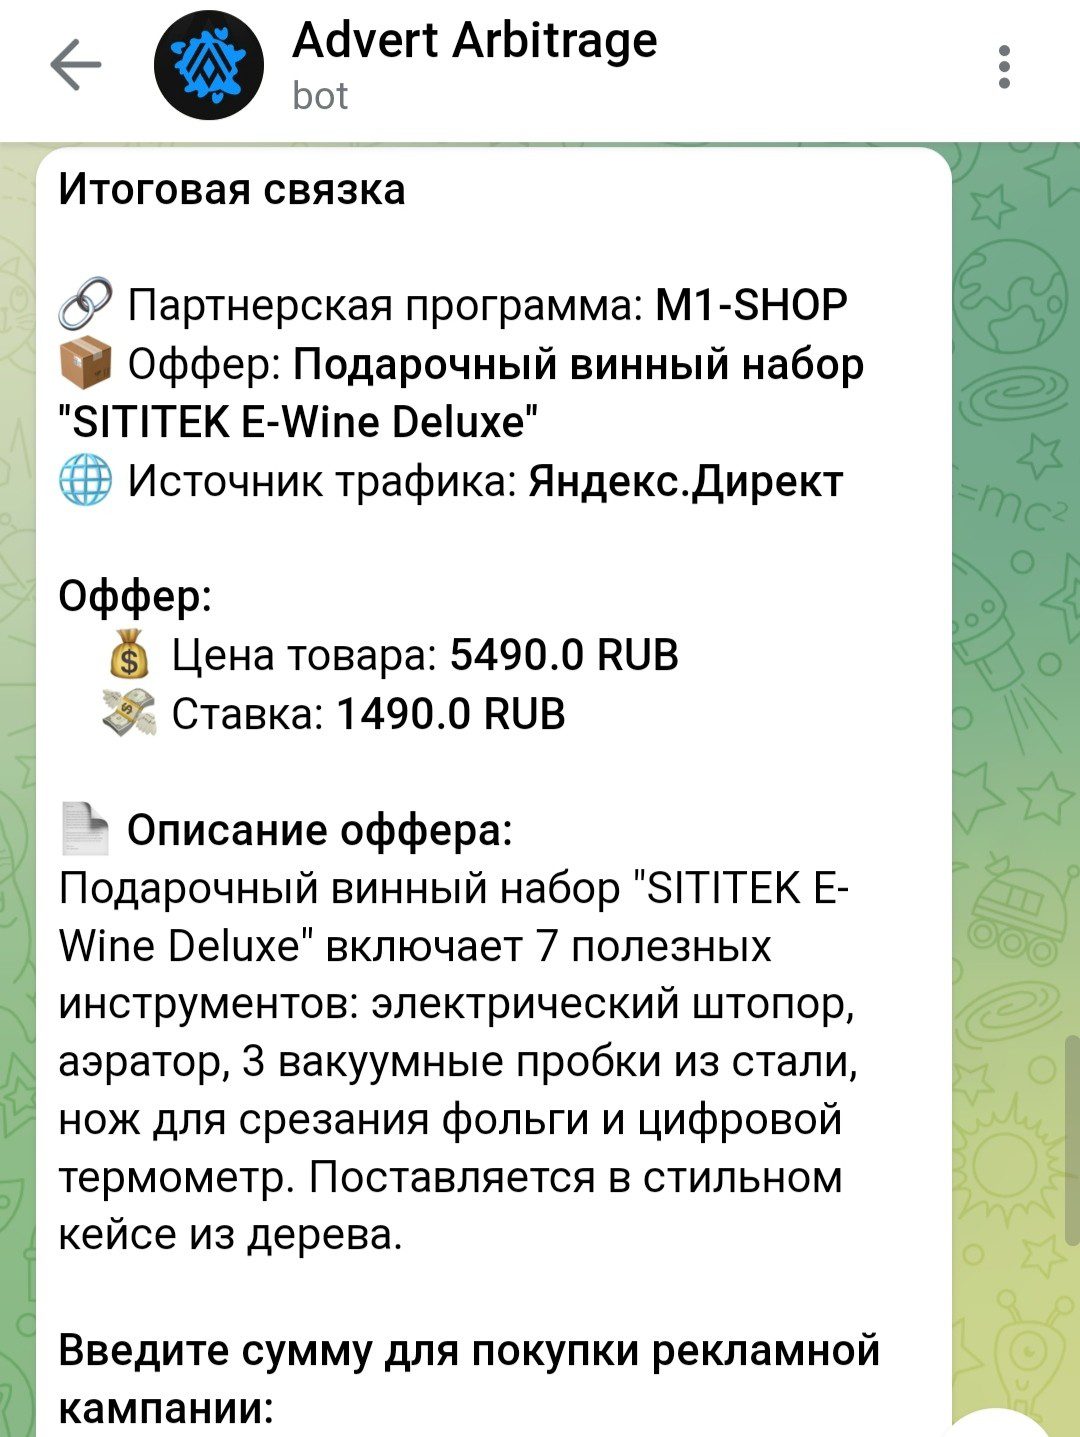 Телеграм проект Advert Arbitrage Антона Филатова